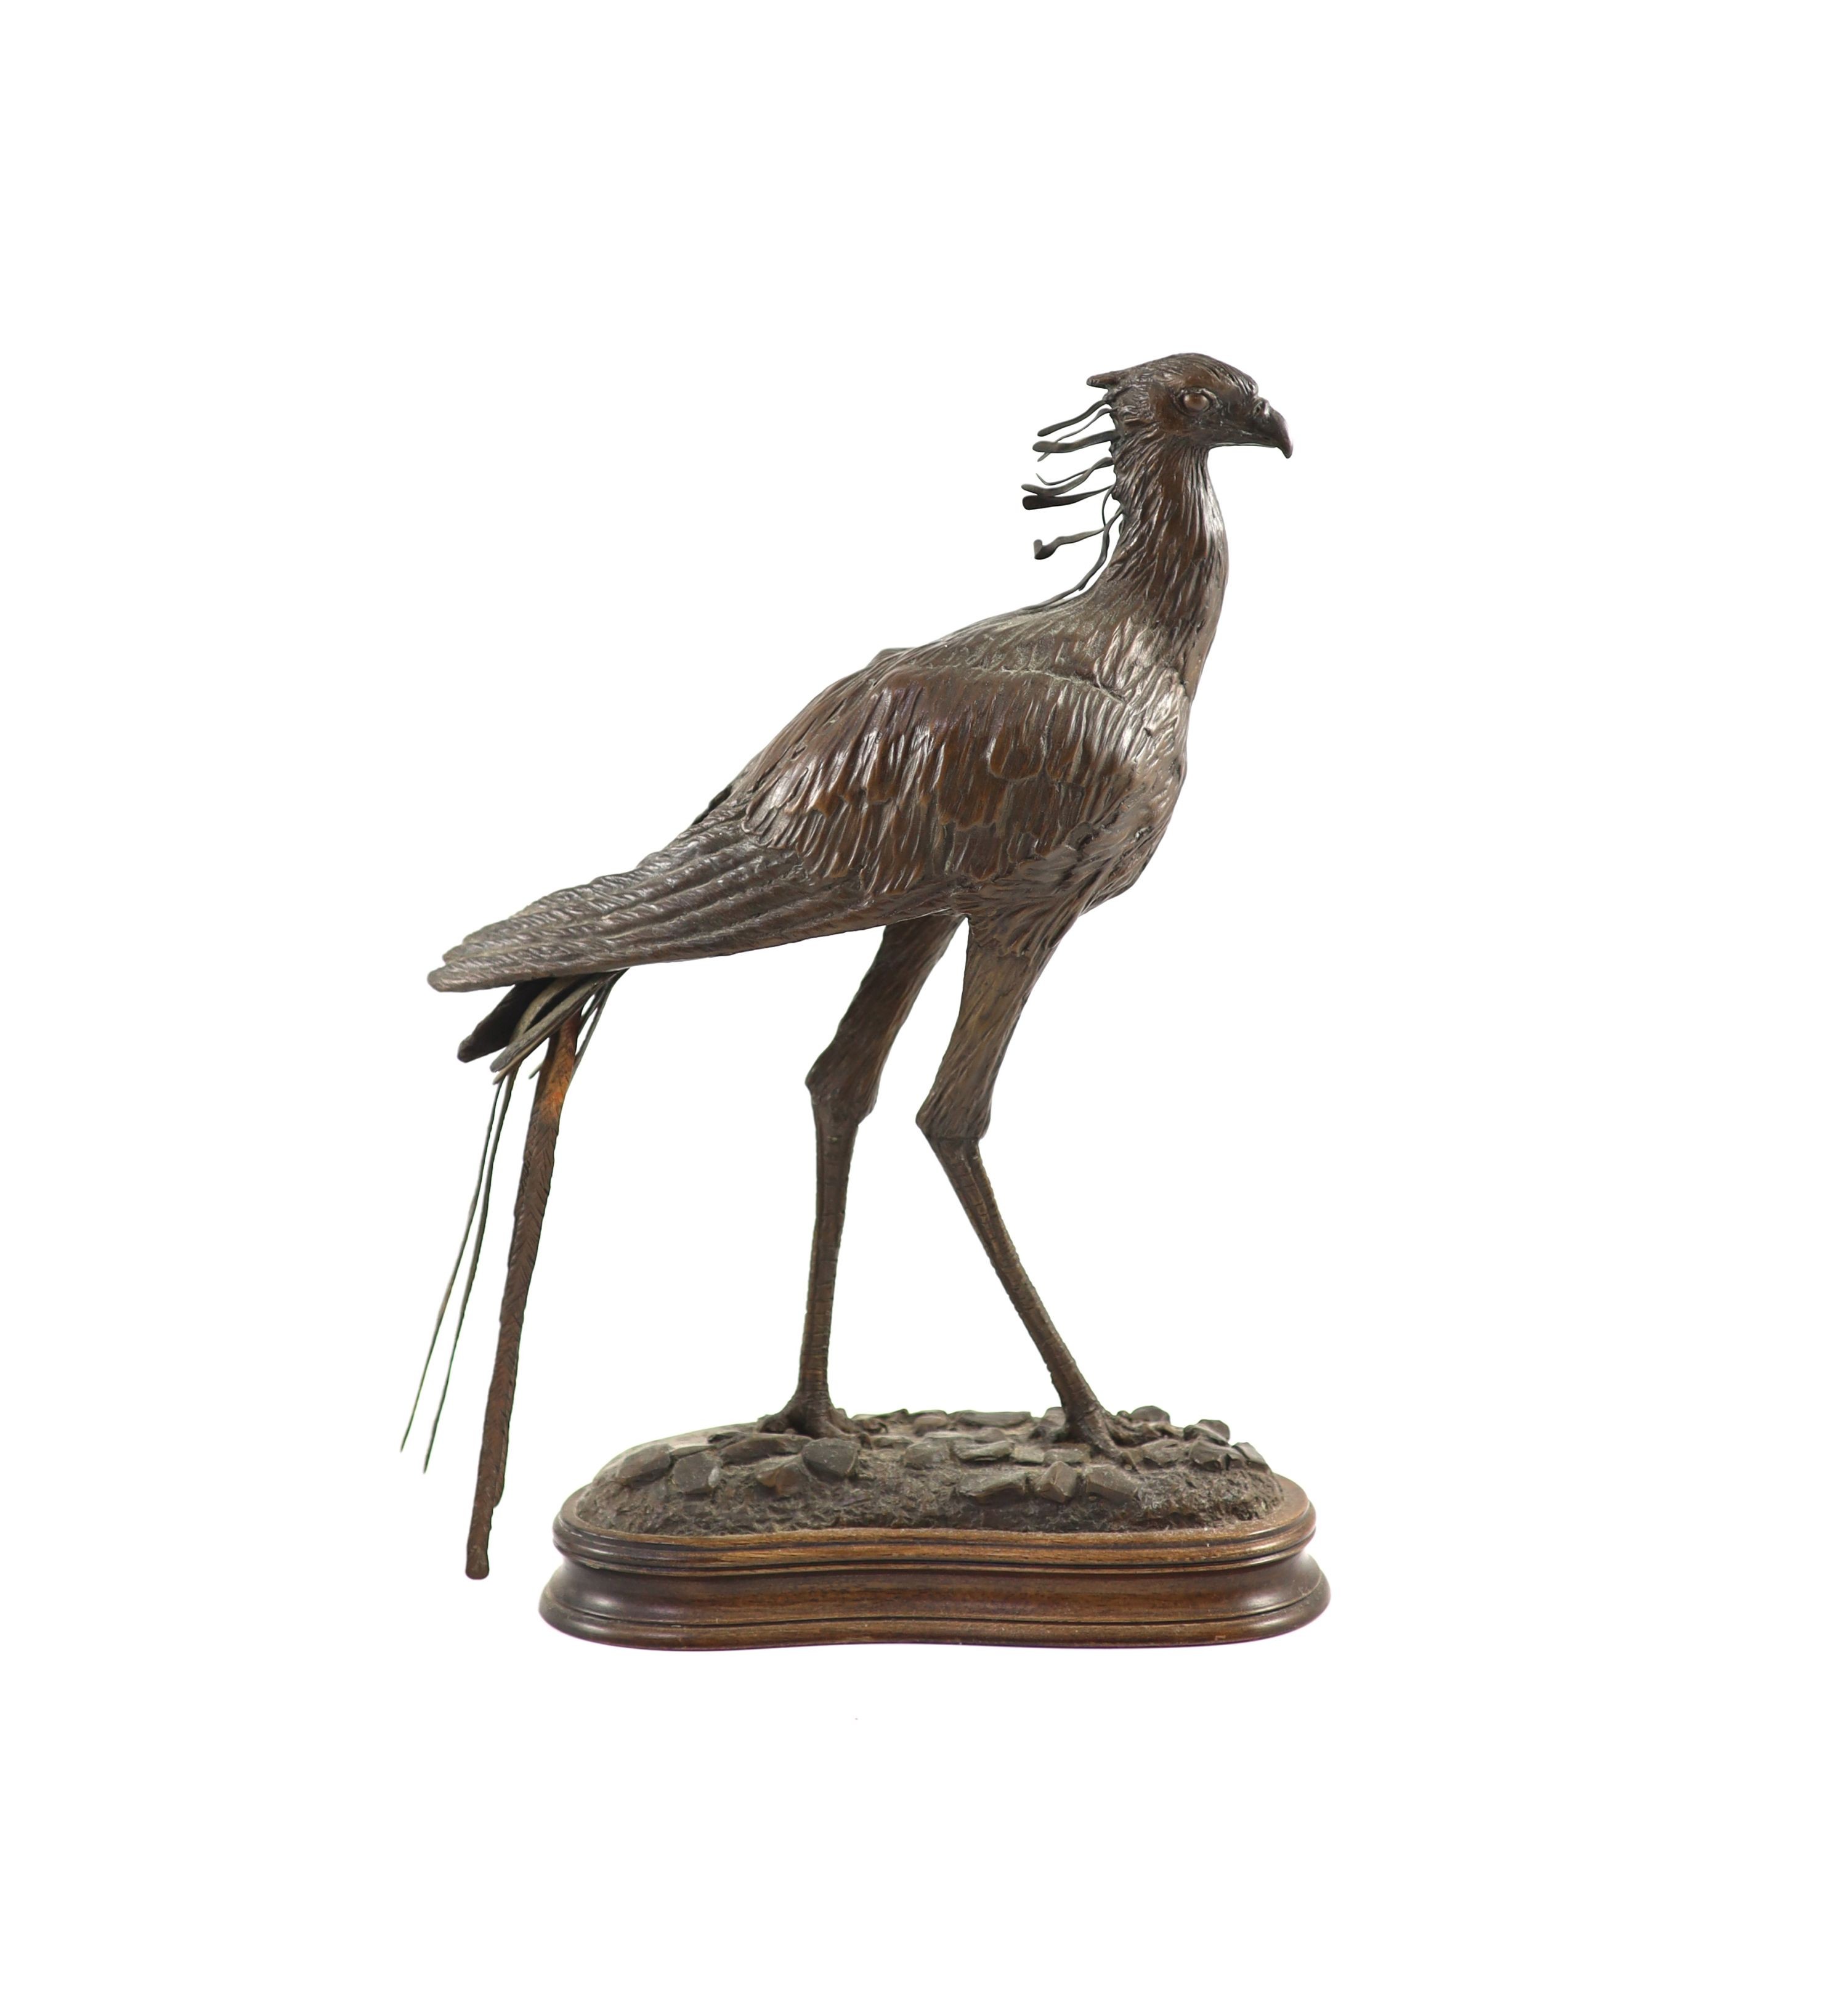 Tim Nicklin. A bronze model of a Secretary bird width 24cm height 32cm